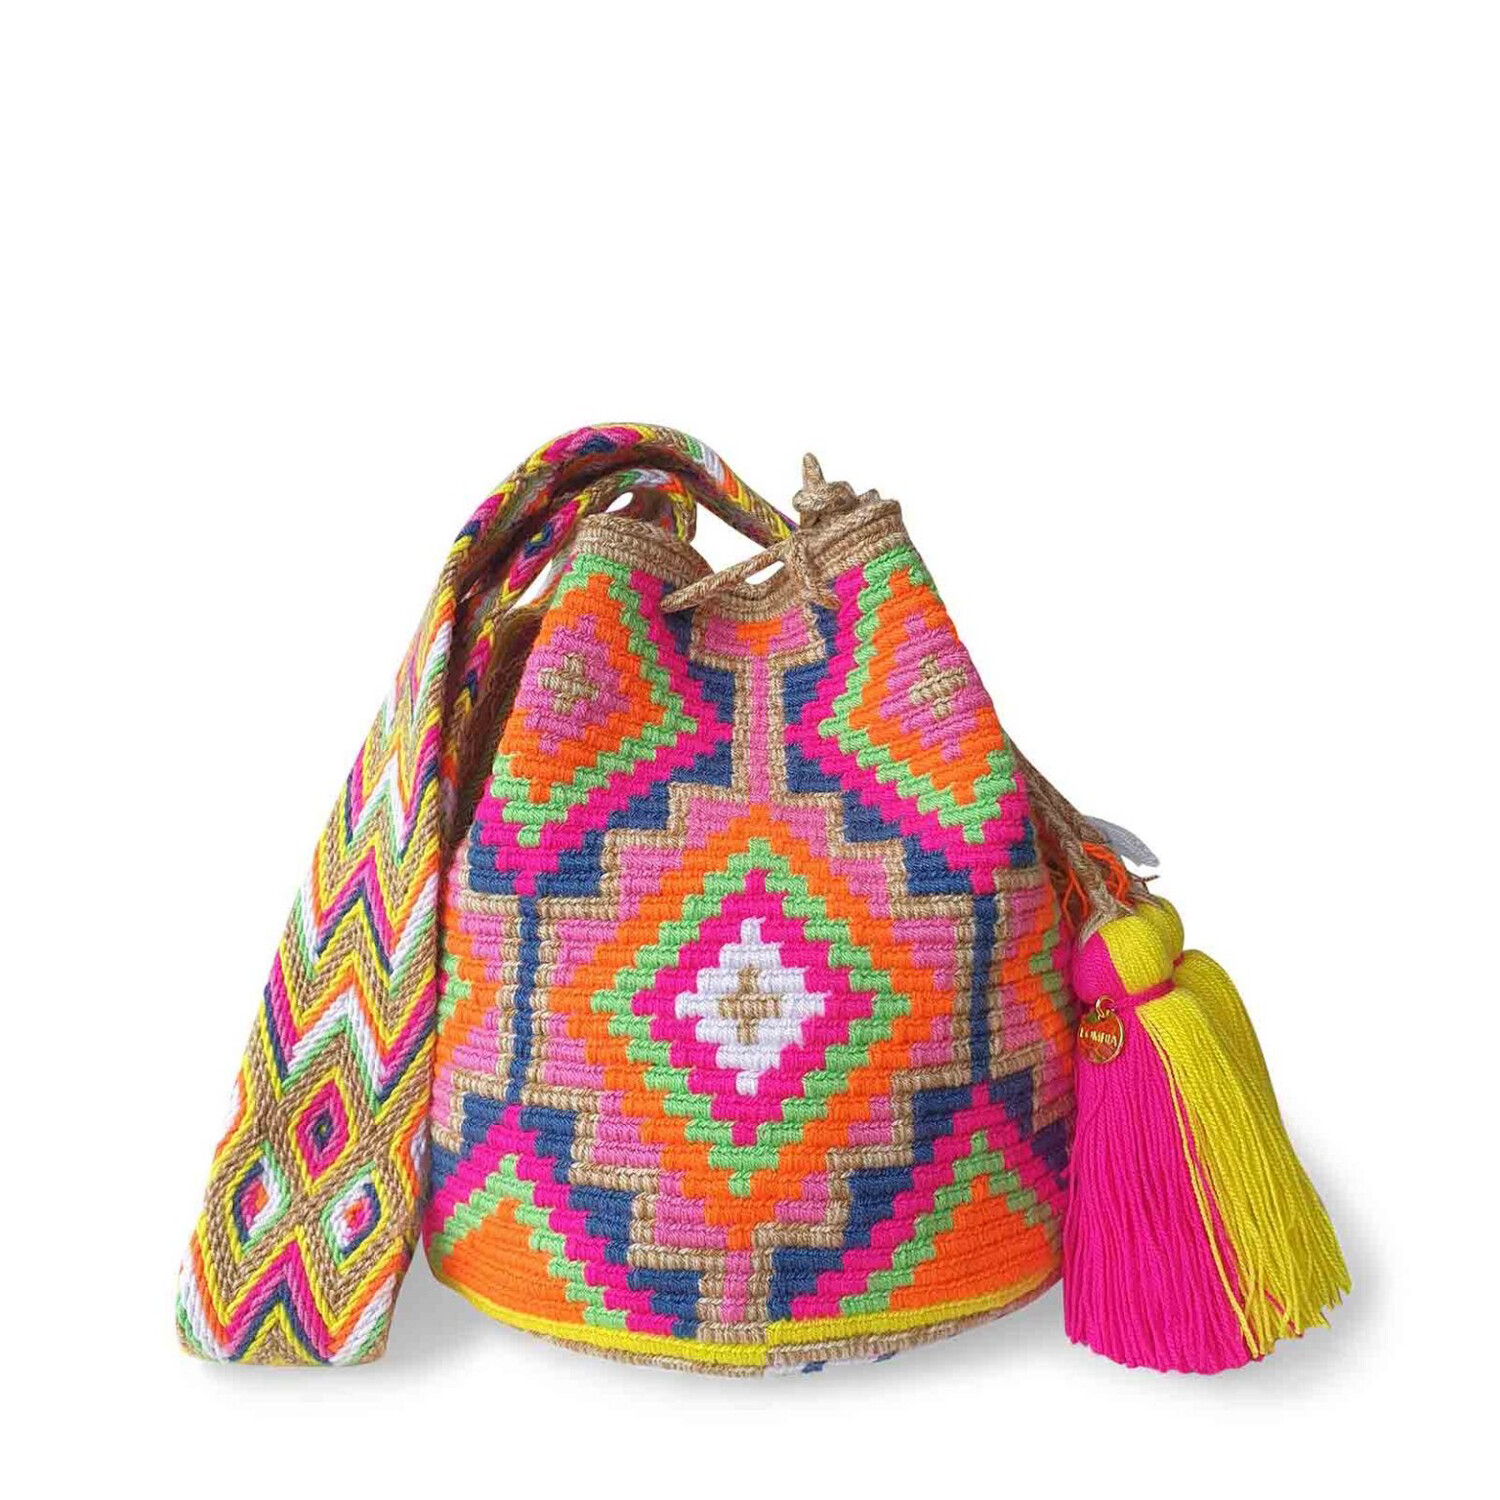 Lombia, Raya Wayuu Crochet Bag